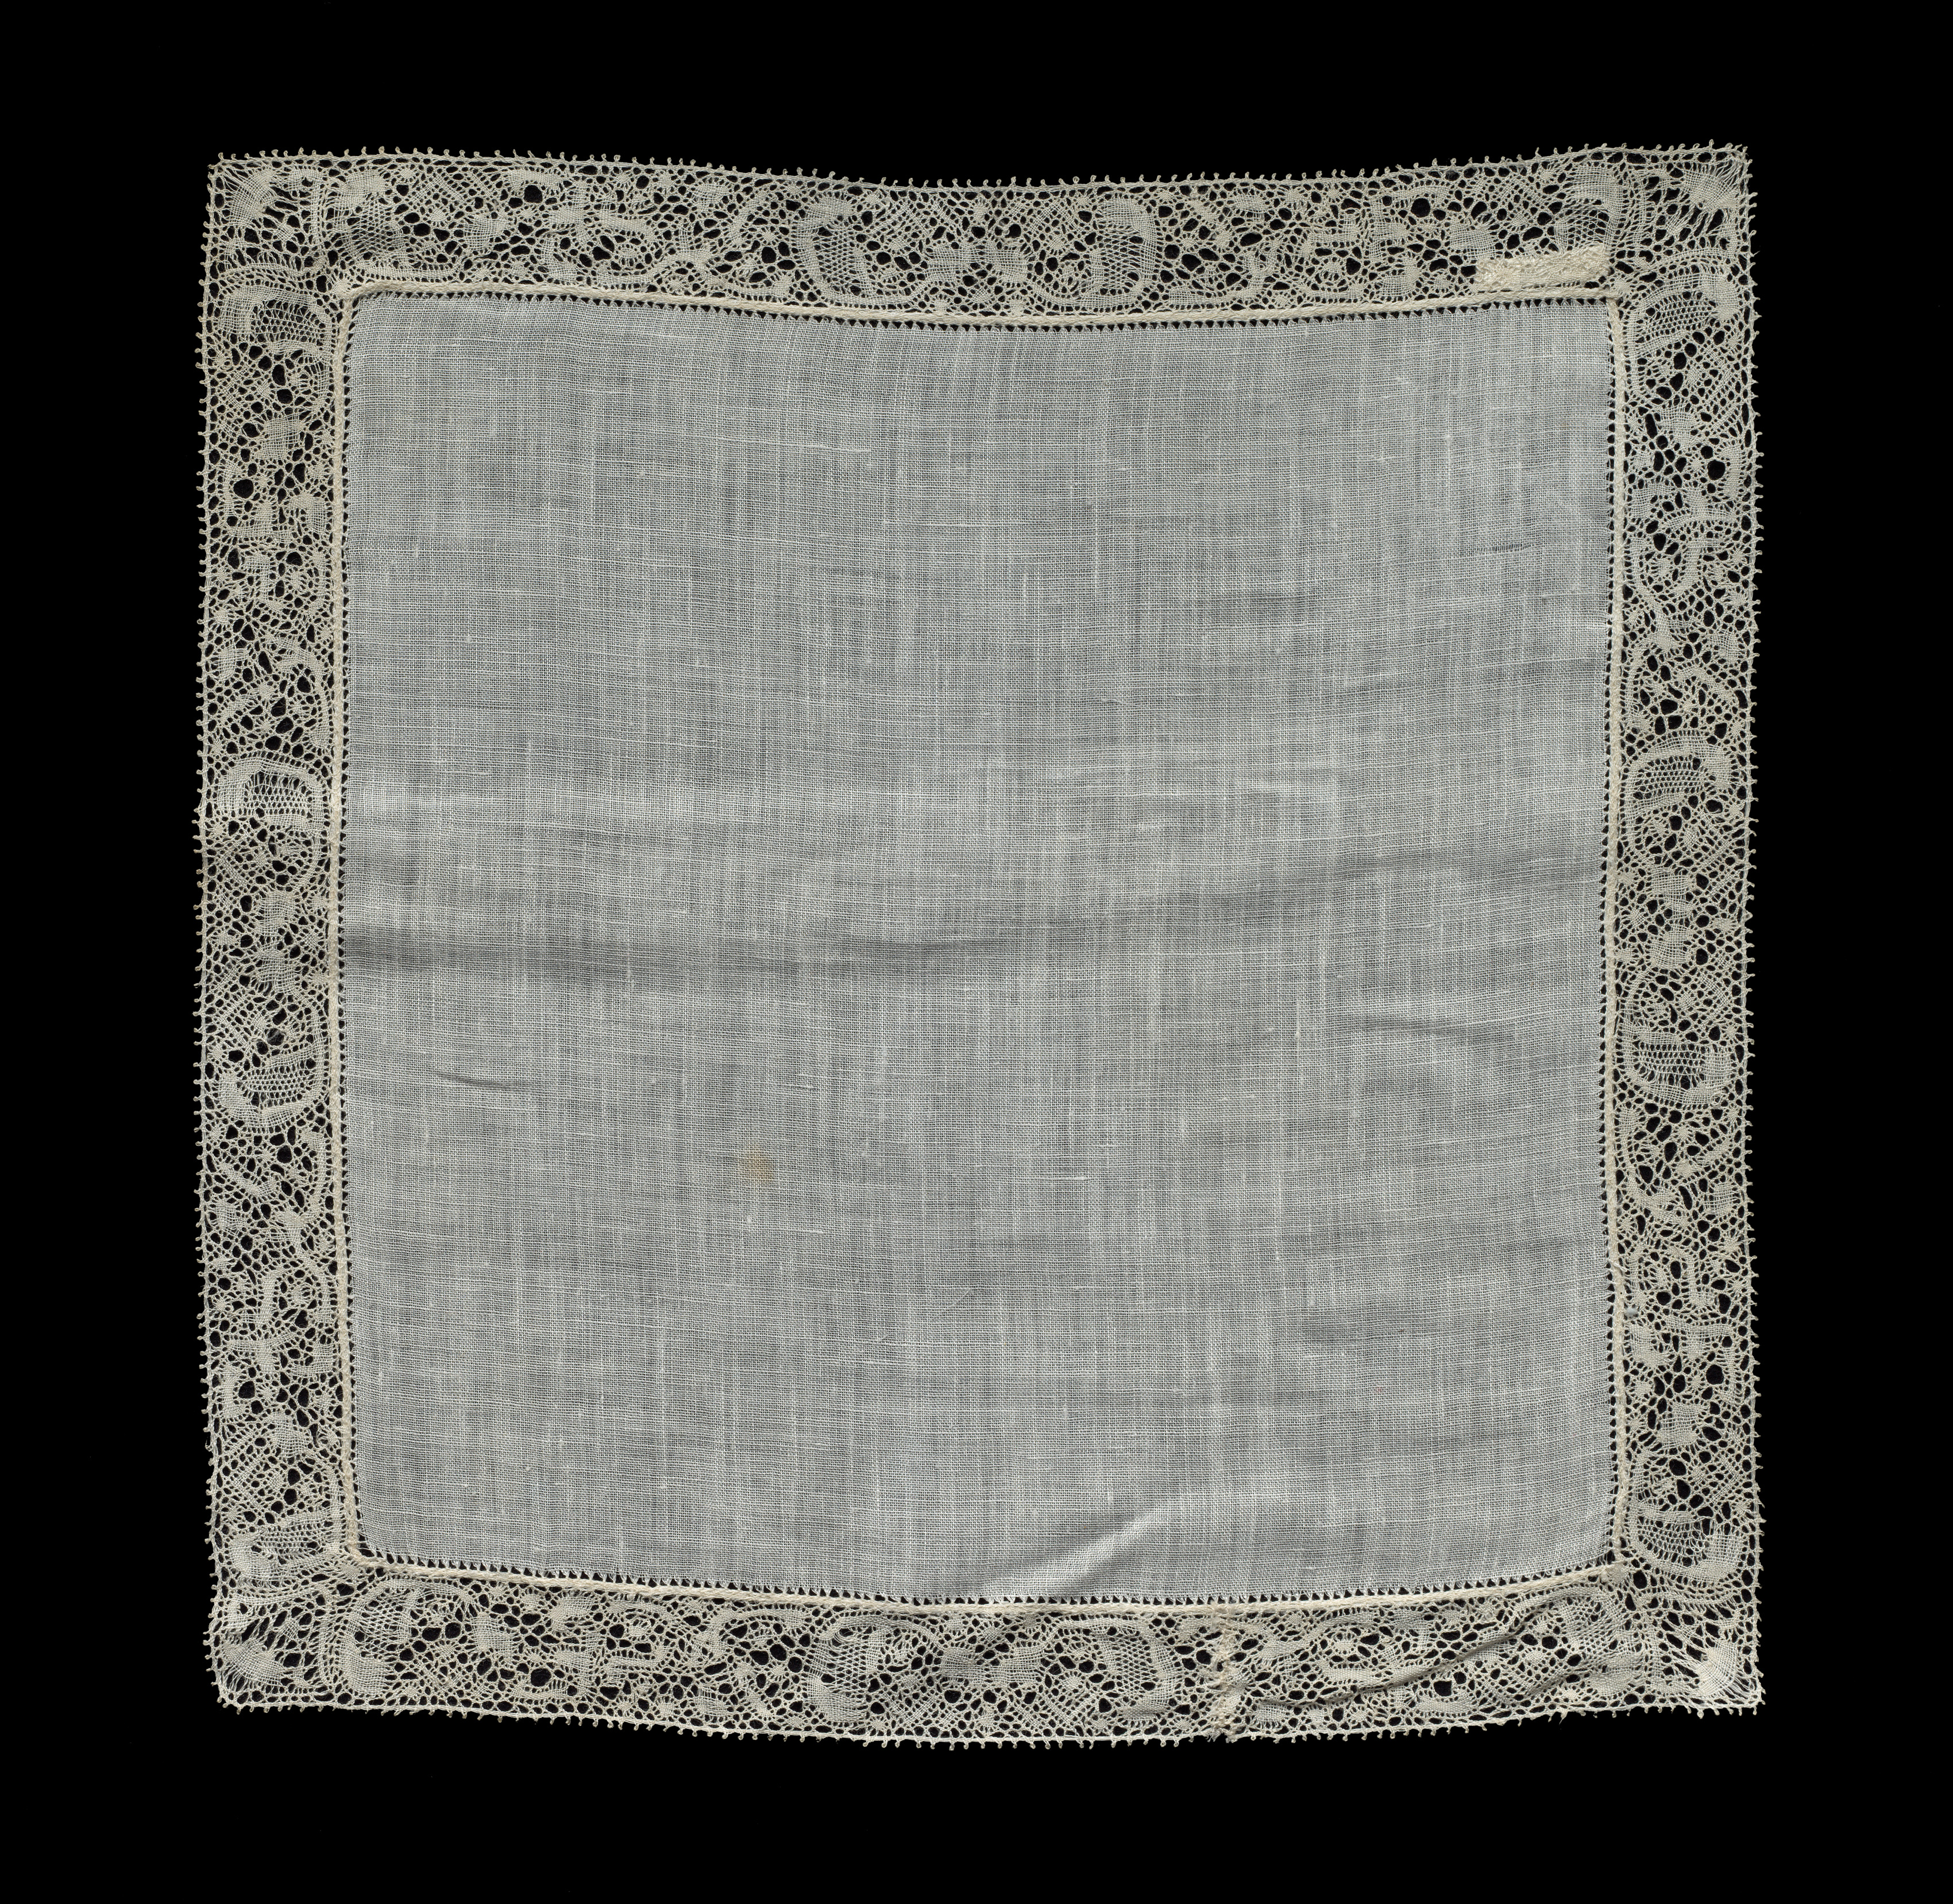 Bobbin Lace Handkerchief